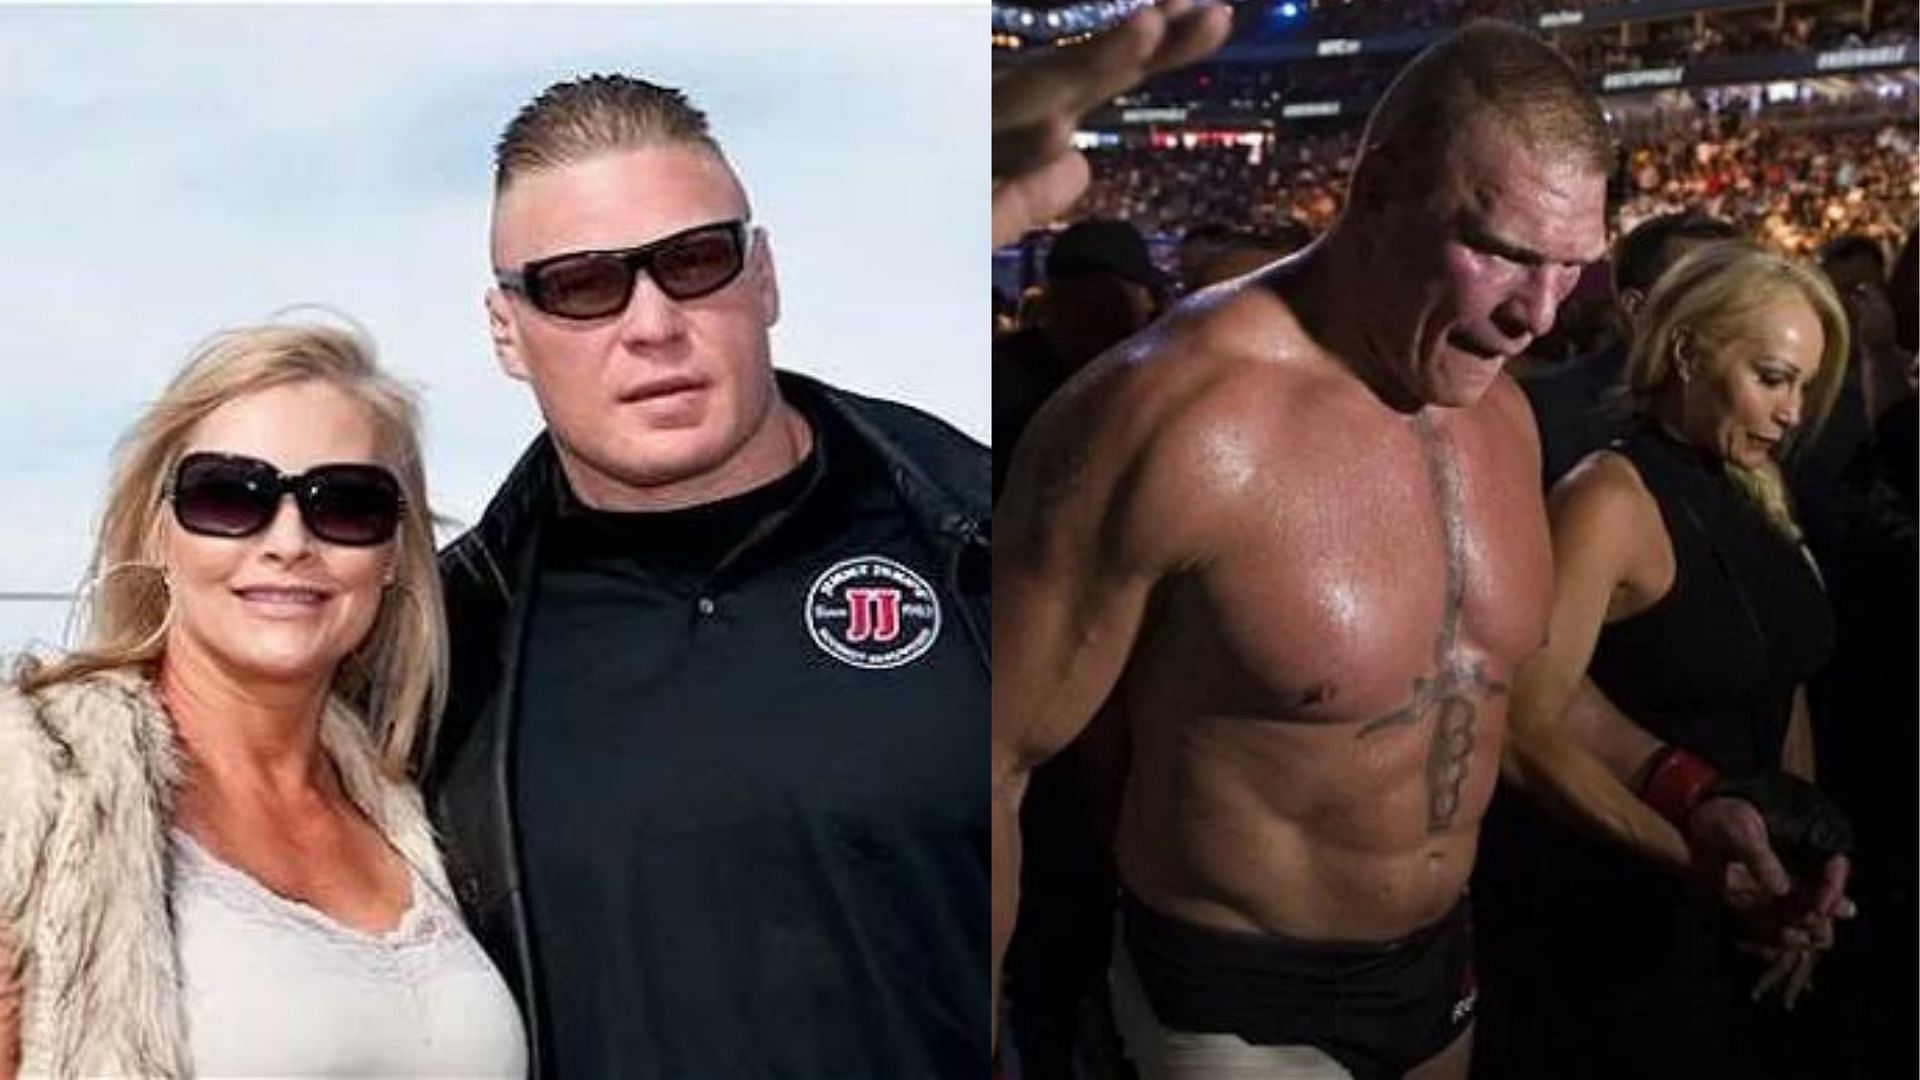 Real-life WWE couple Brock Lesnar and Sable